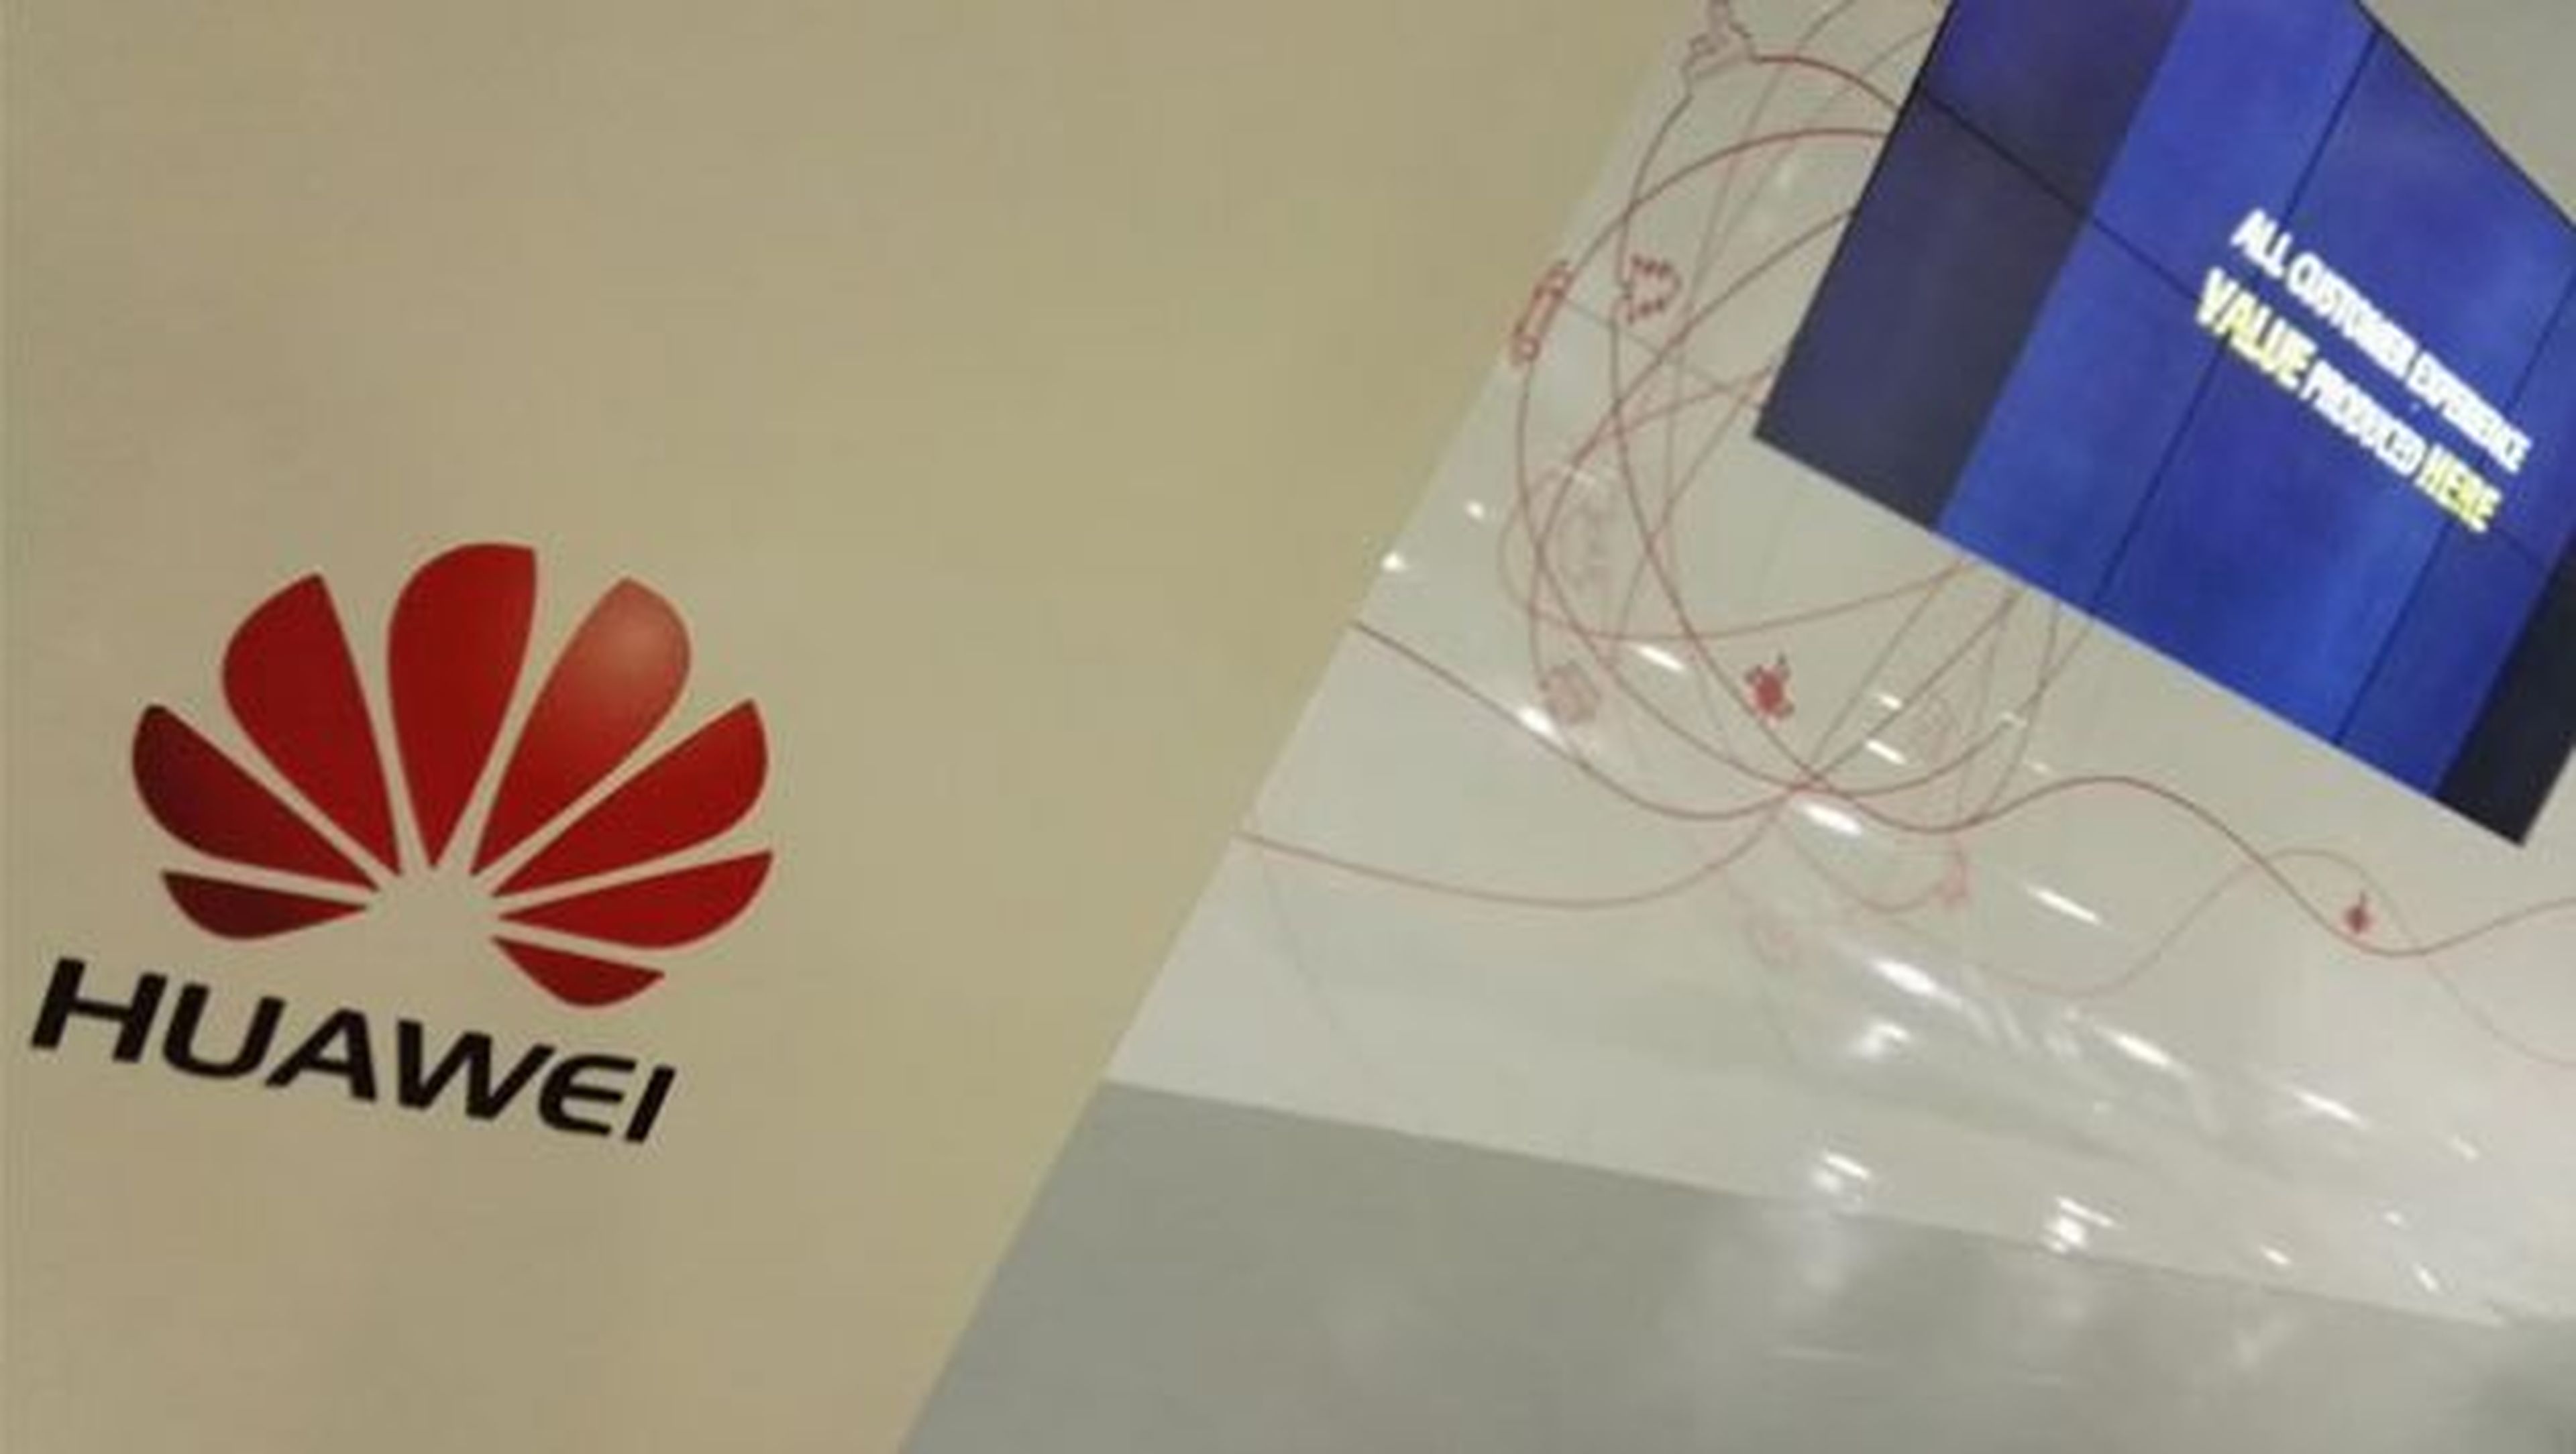 Cómo funciona Huawei: un viaje al corazón de China